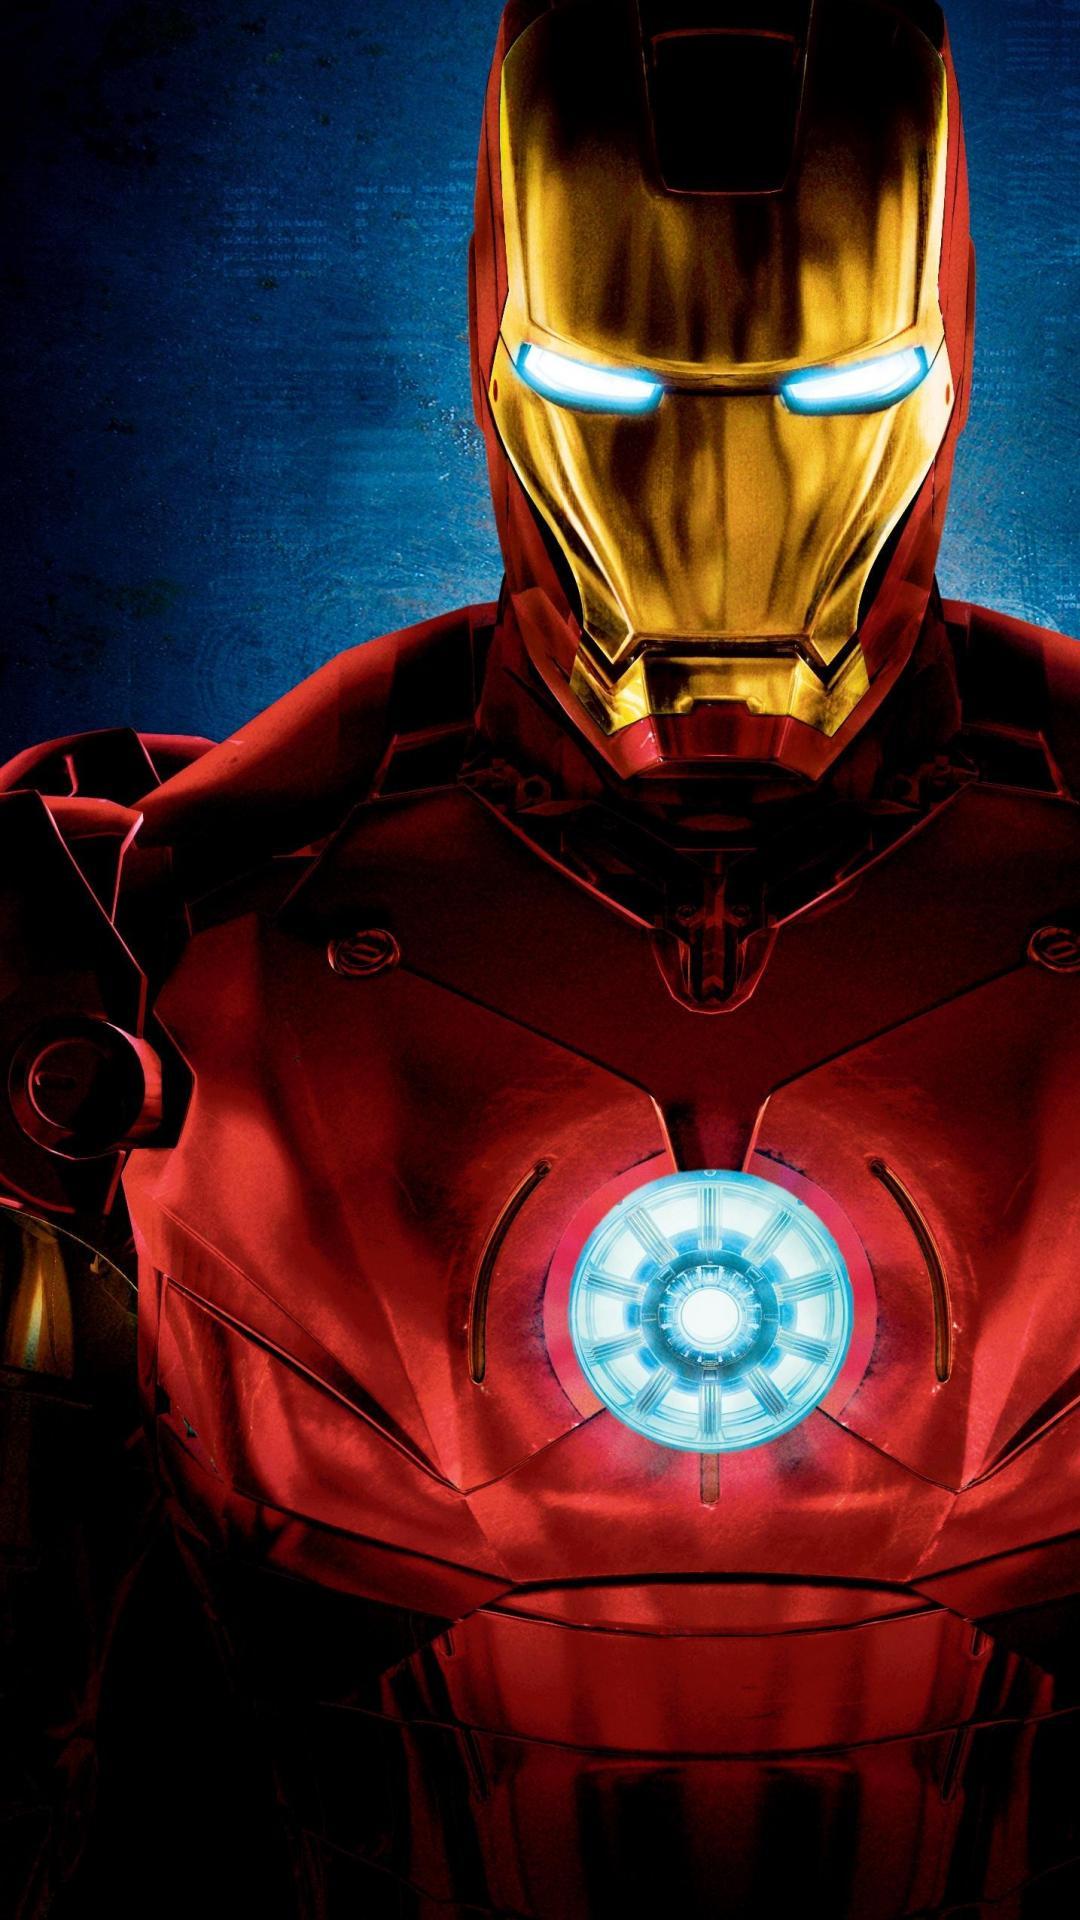 Iron Man Phone Wallpapers là bộ sưu tập hình nền độc đáo và đẹp mắt dành cho fan của Tony Stark. Hãy chiêm ngưỡng các hình ảnh của Iron Man từ phiên bản đầu tiên cho đến phiên bản mới nhất. Với những đường nét thiết kế ấn tượng và đầy tinh tế, các hình nền này sẽ khiến bạn thích thú.